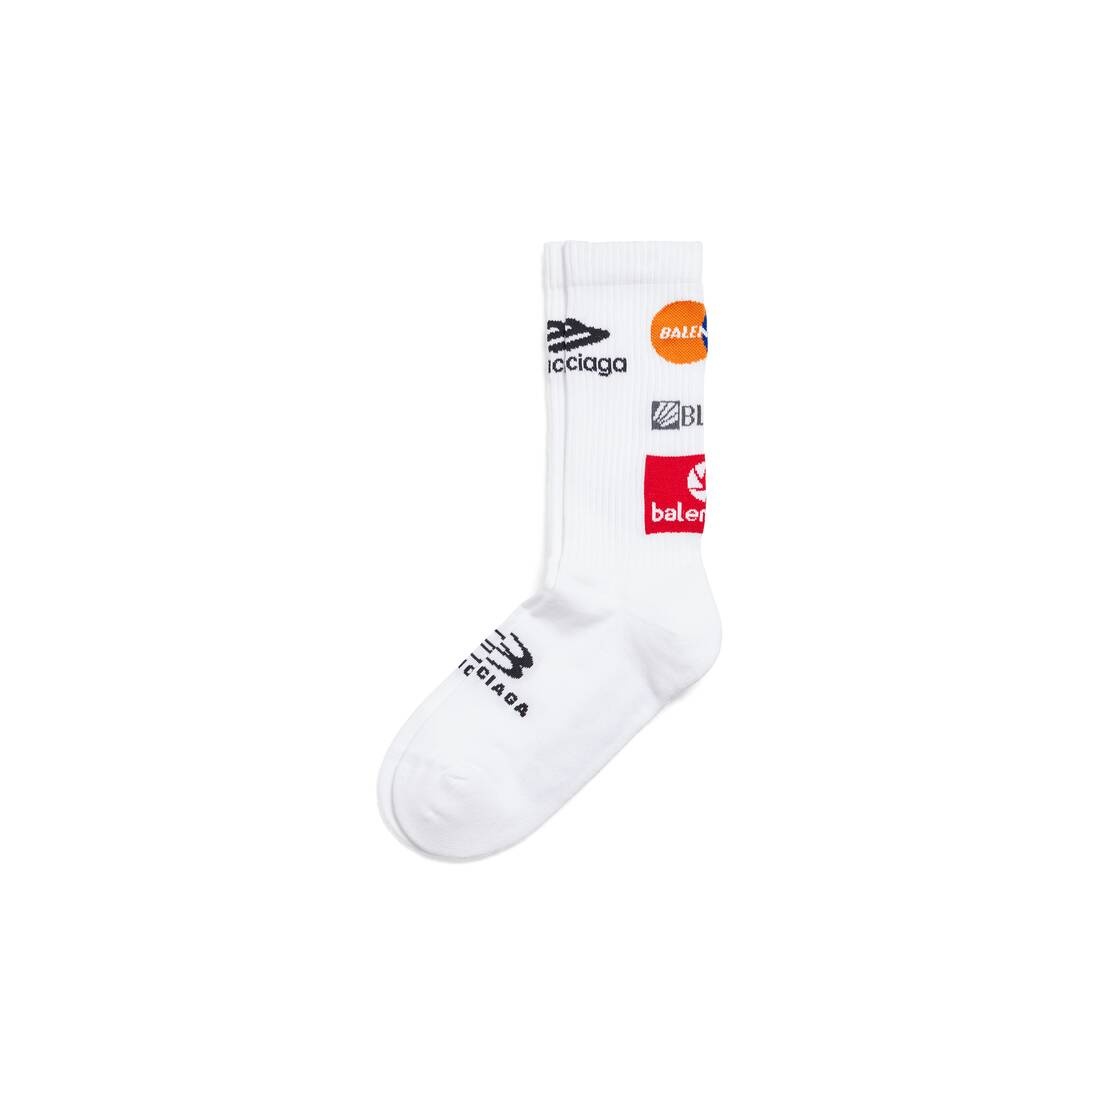 Men's Top League Socks in White/black - 2